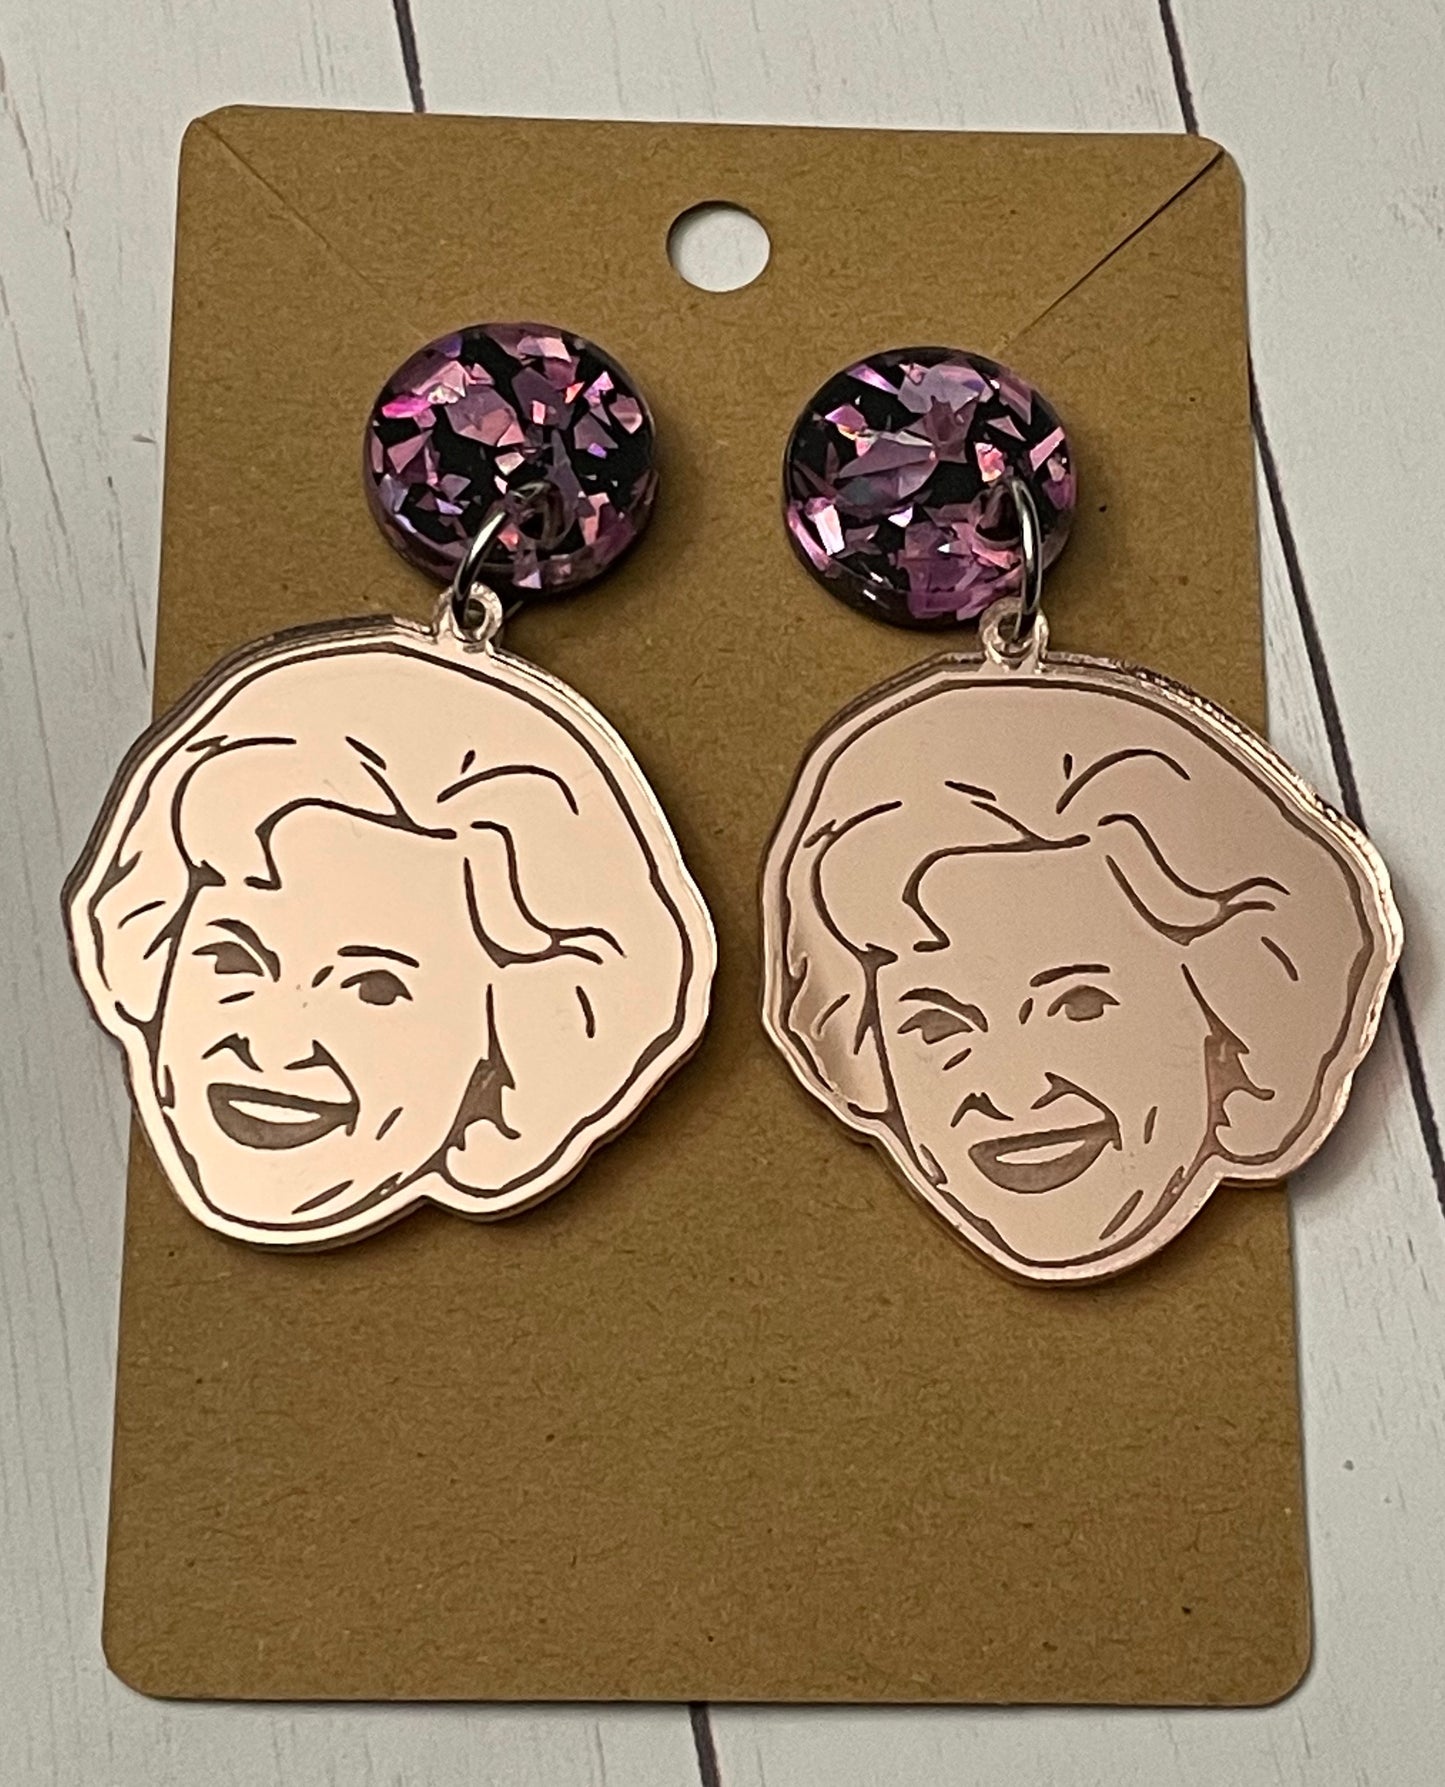 Betty White earrings